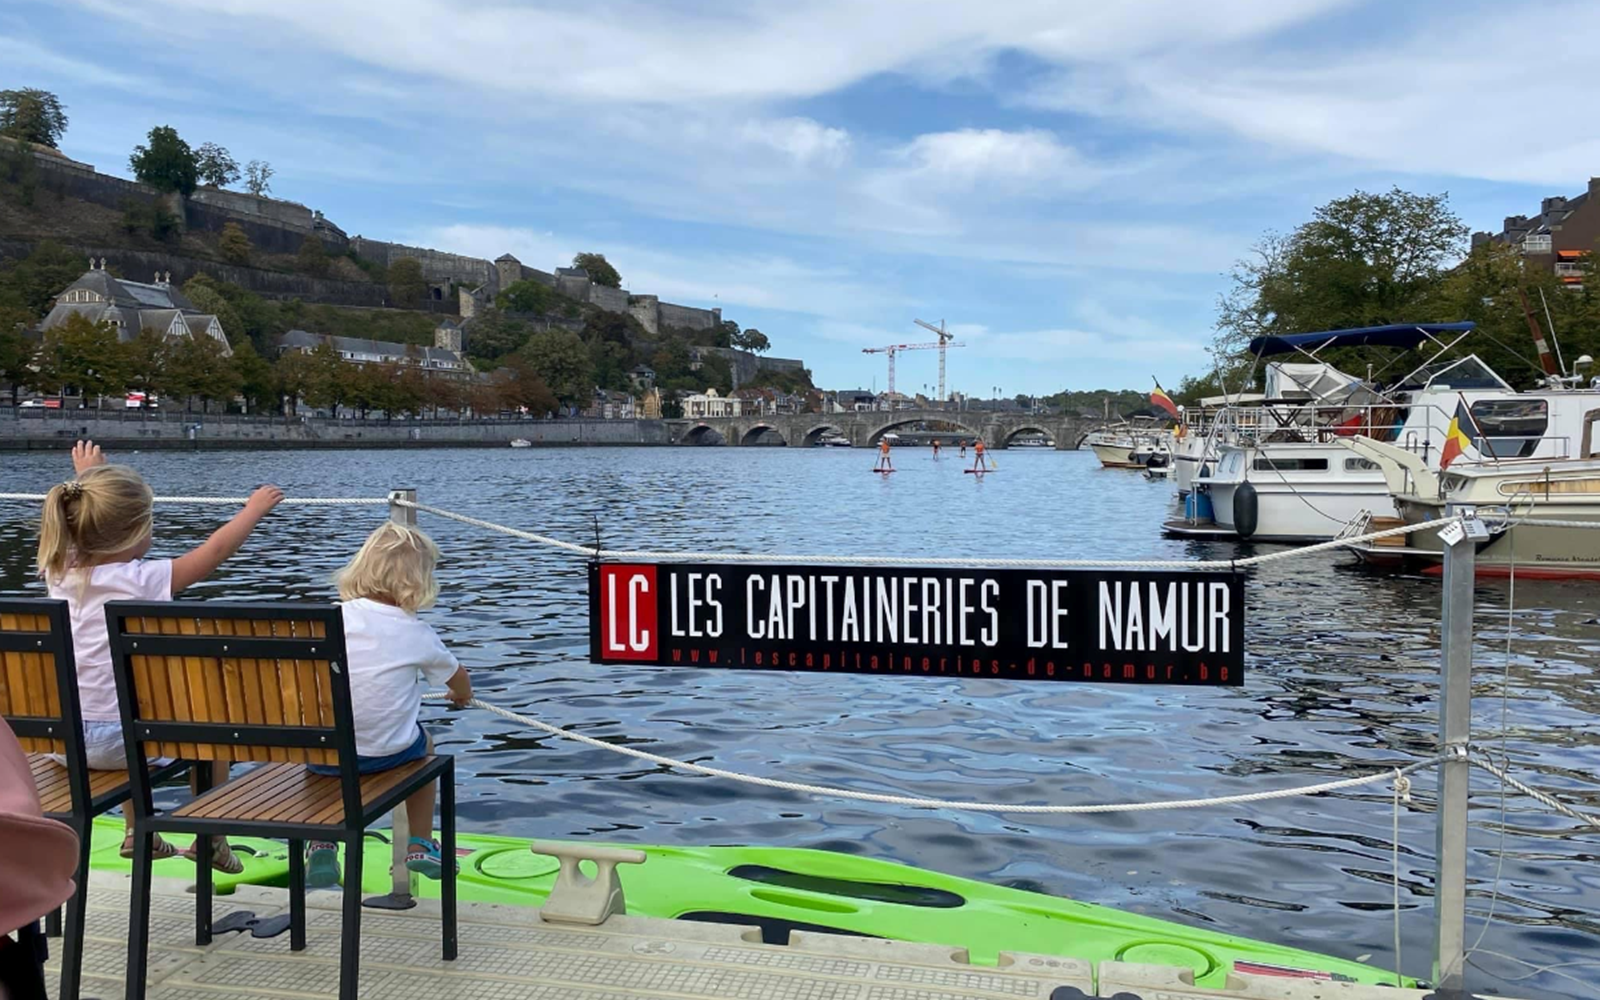 Les Capitaineries de Namur